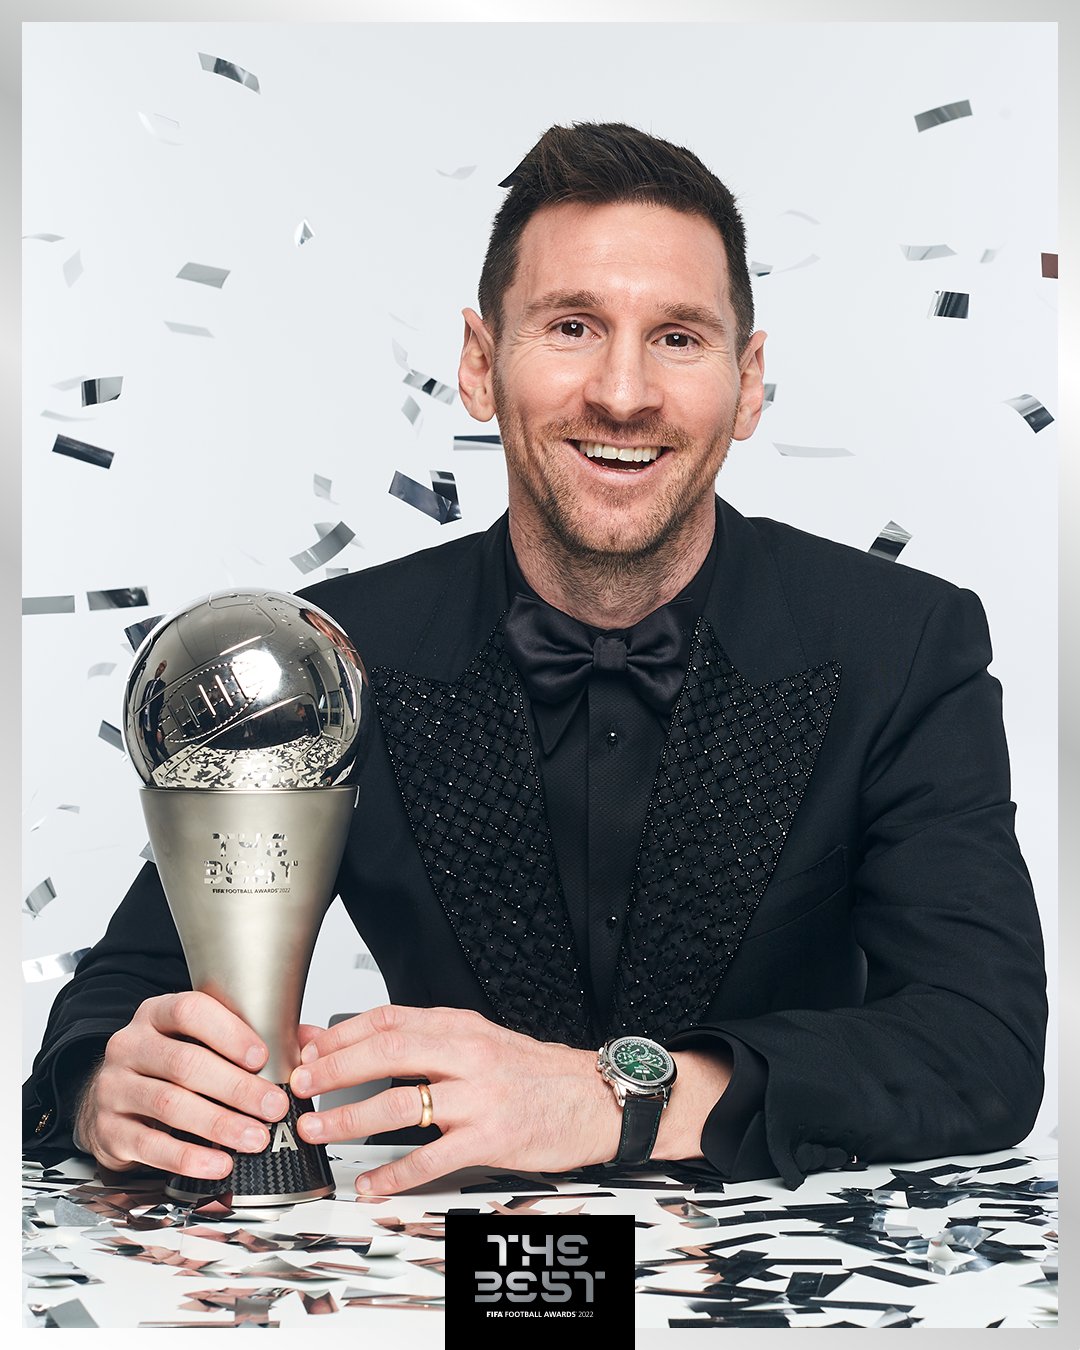 梅西第二度获得国际足总最佳男子球员奖。摘自国际足总推特